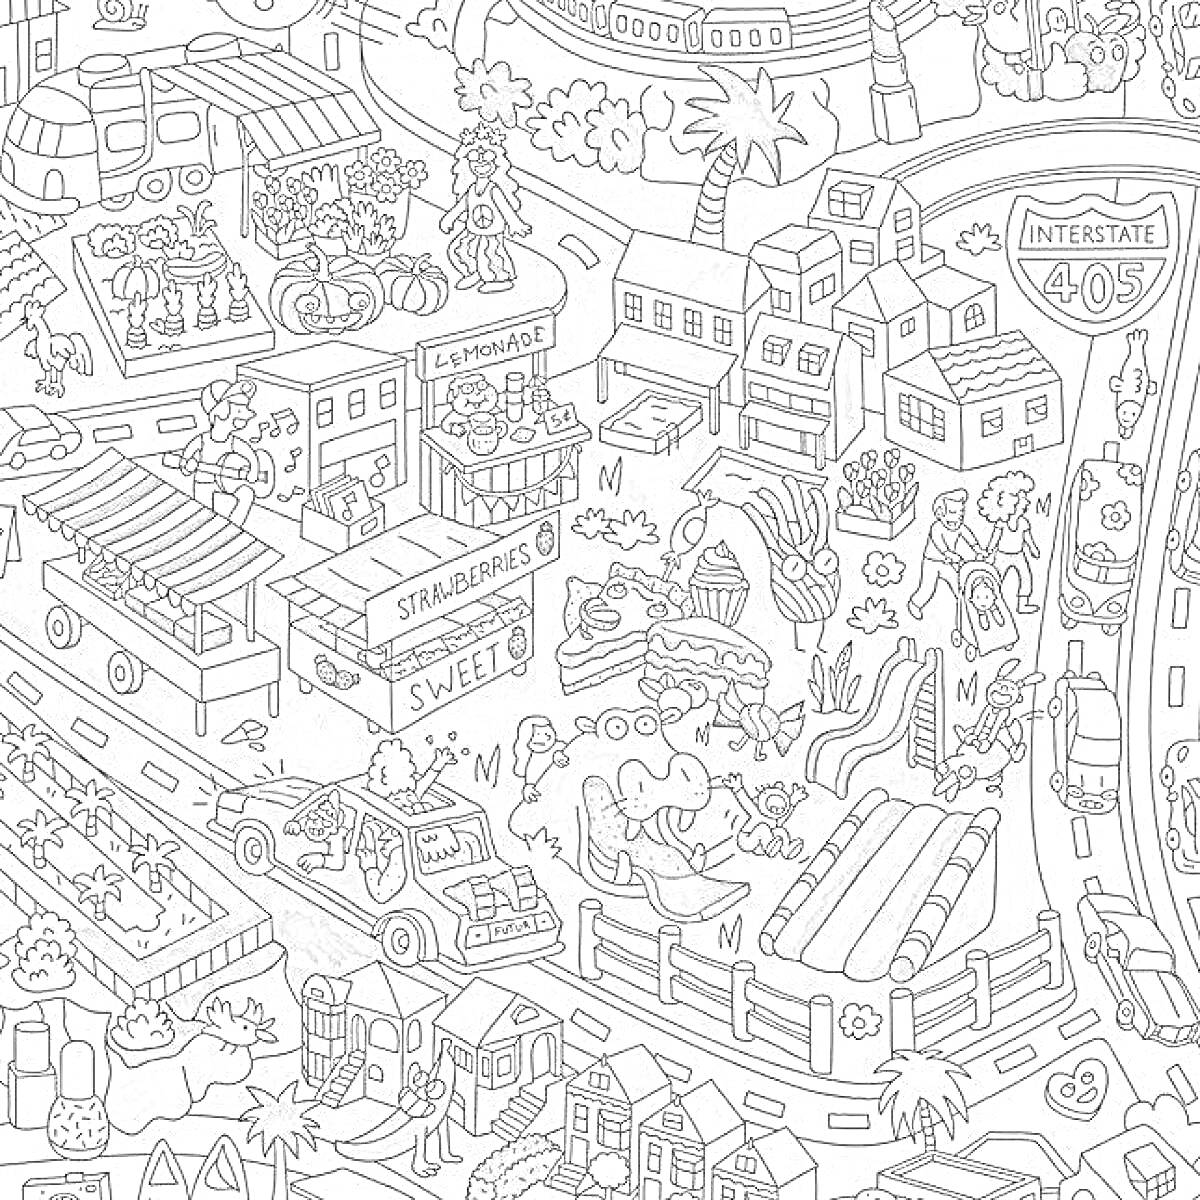 Раскраска Городская сцена Икеа с фруктовым магазином, автомагазином, дорожным знаком Interstate 405, детскими горками, детским парком с динозаврами и автомобили, дорожные знаки и зданиями на заднем плане.